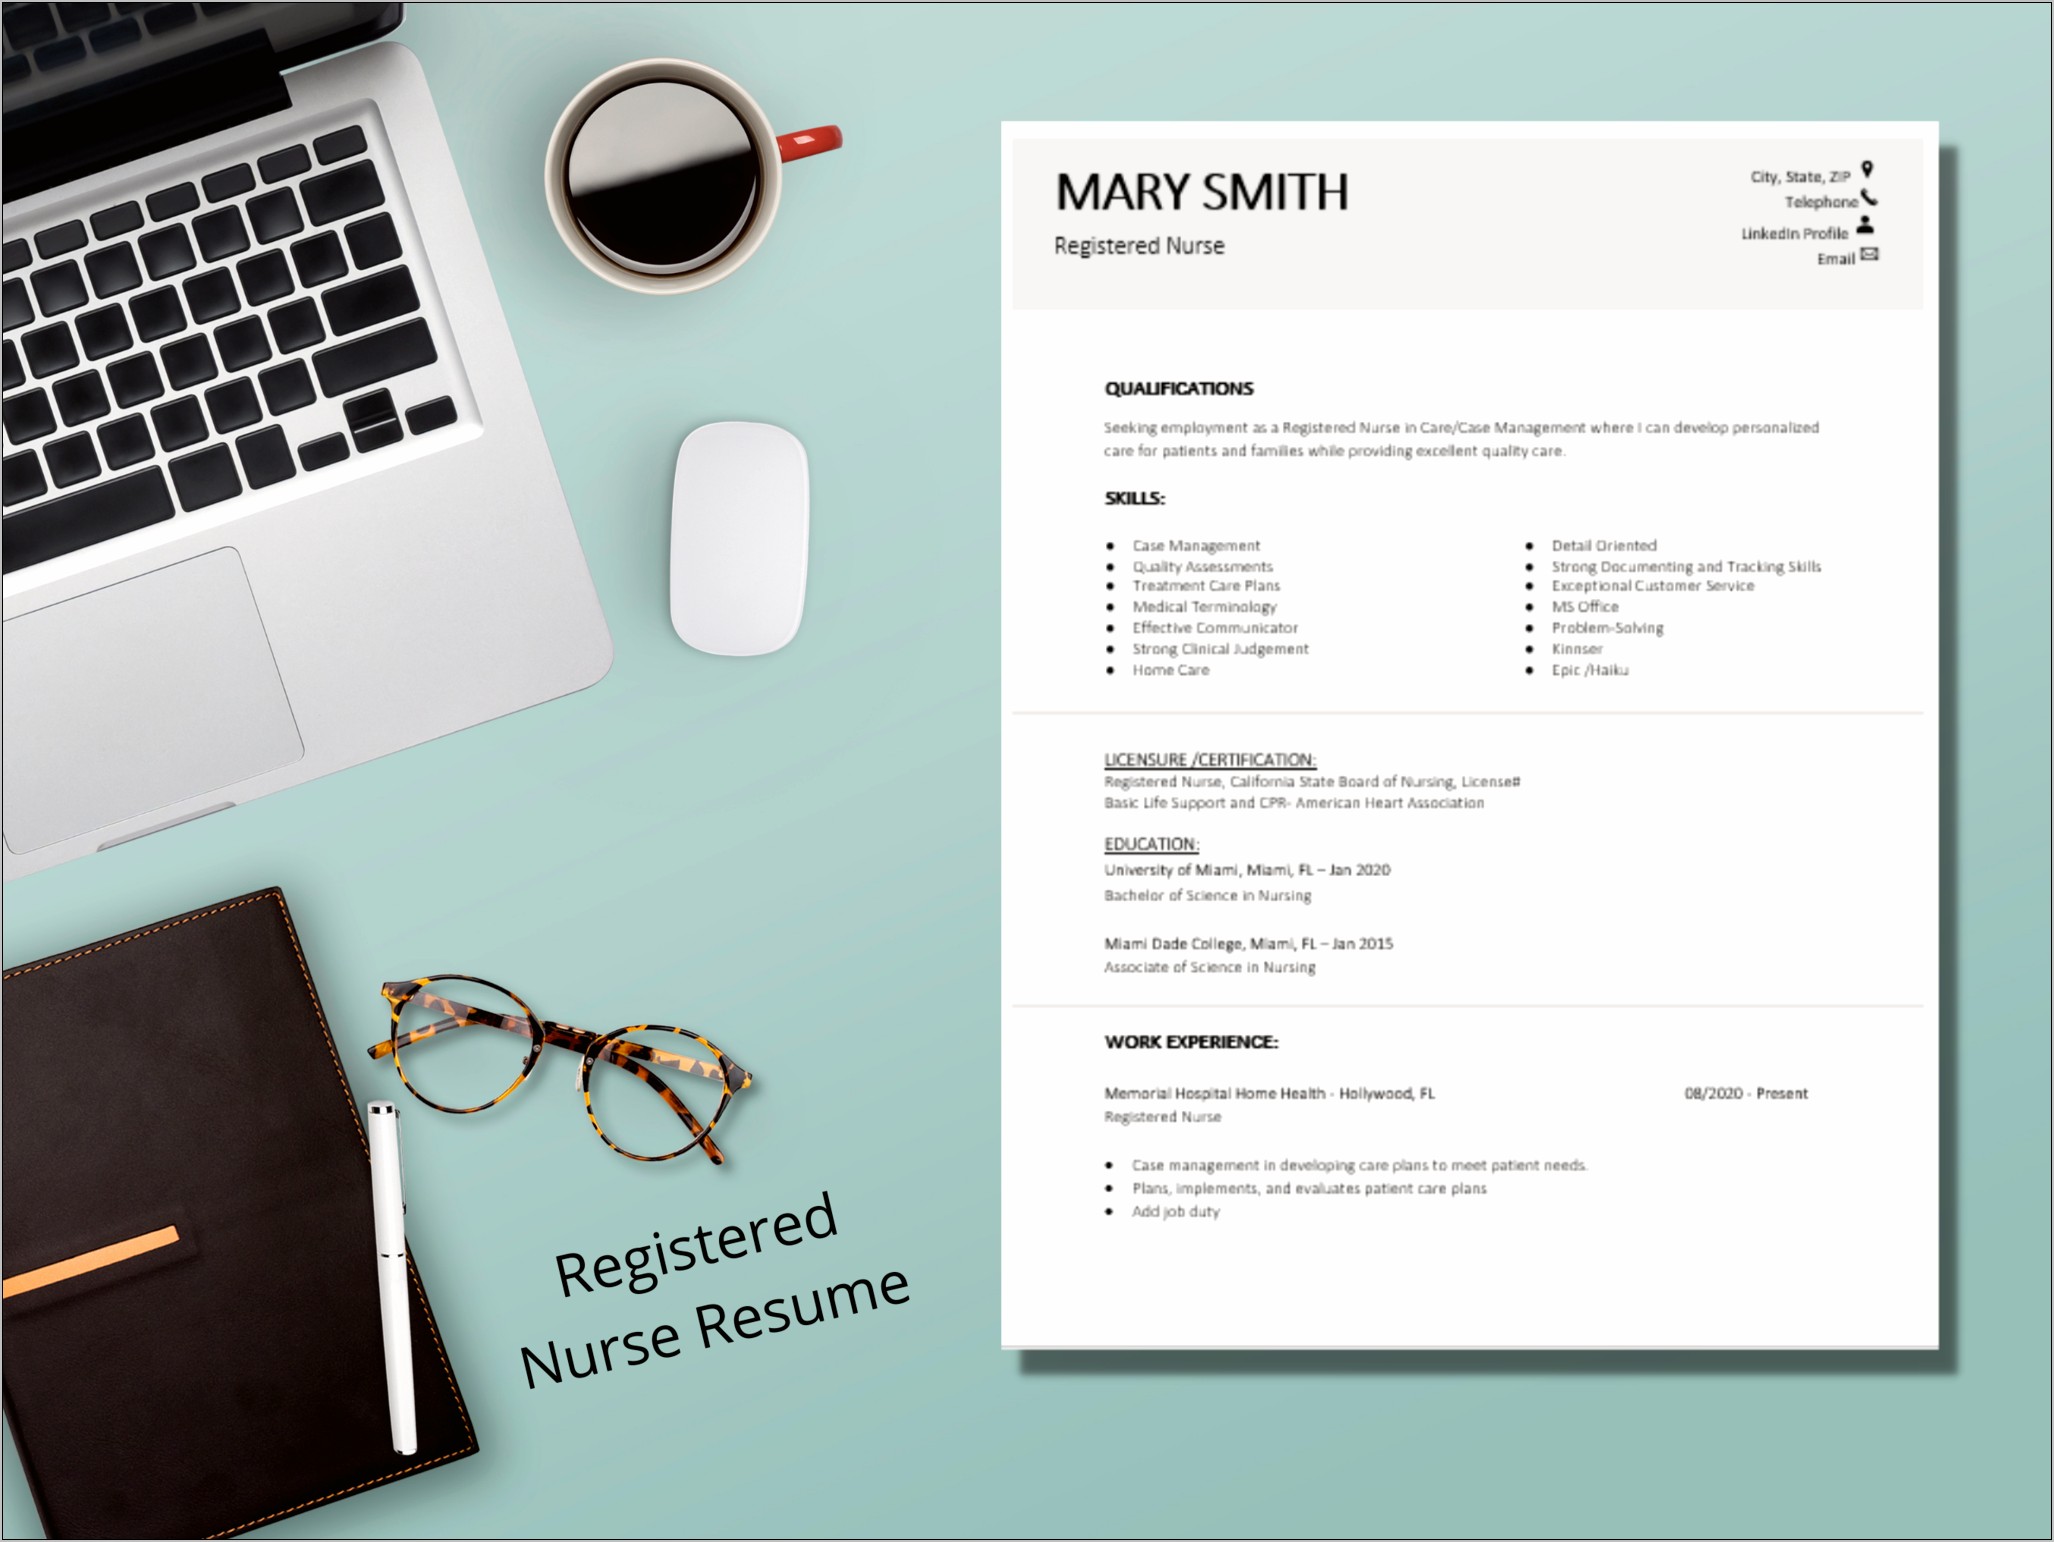 Registered Nurse Case Manager Resumes